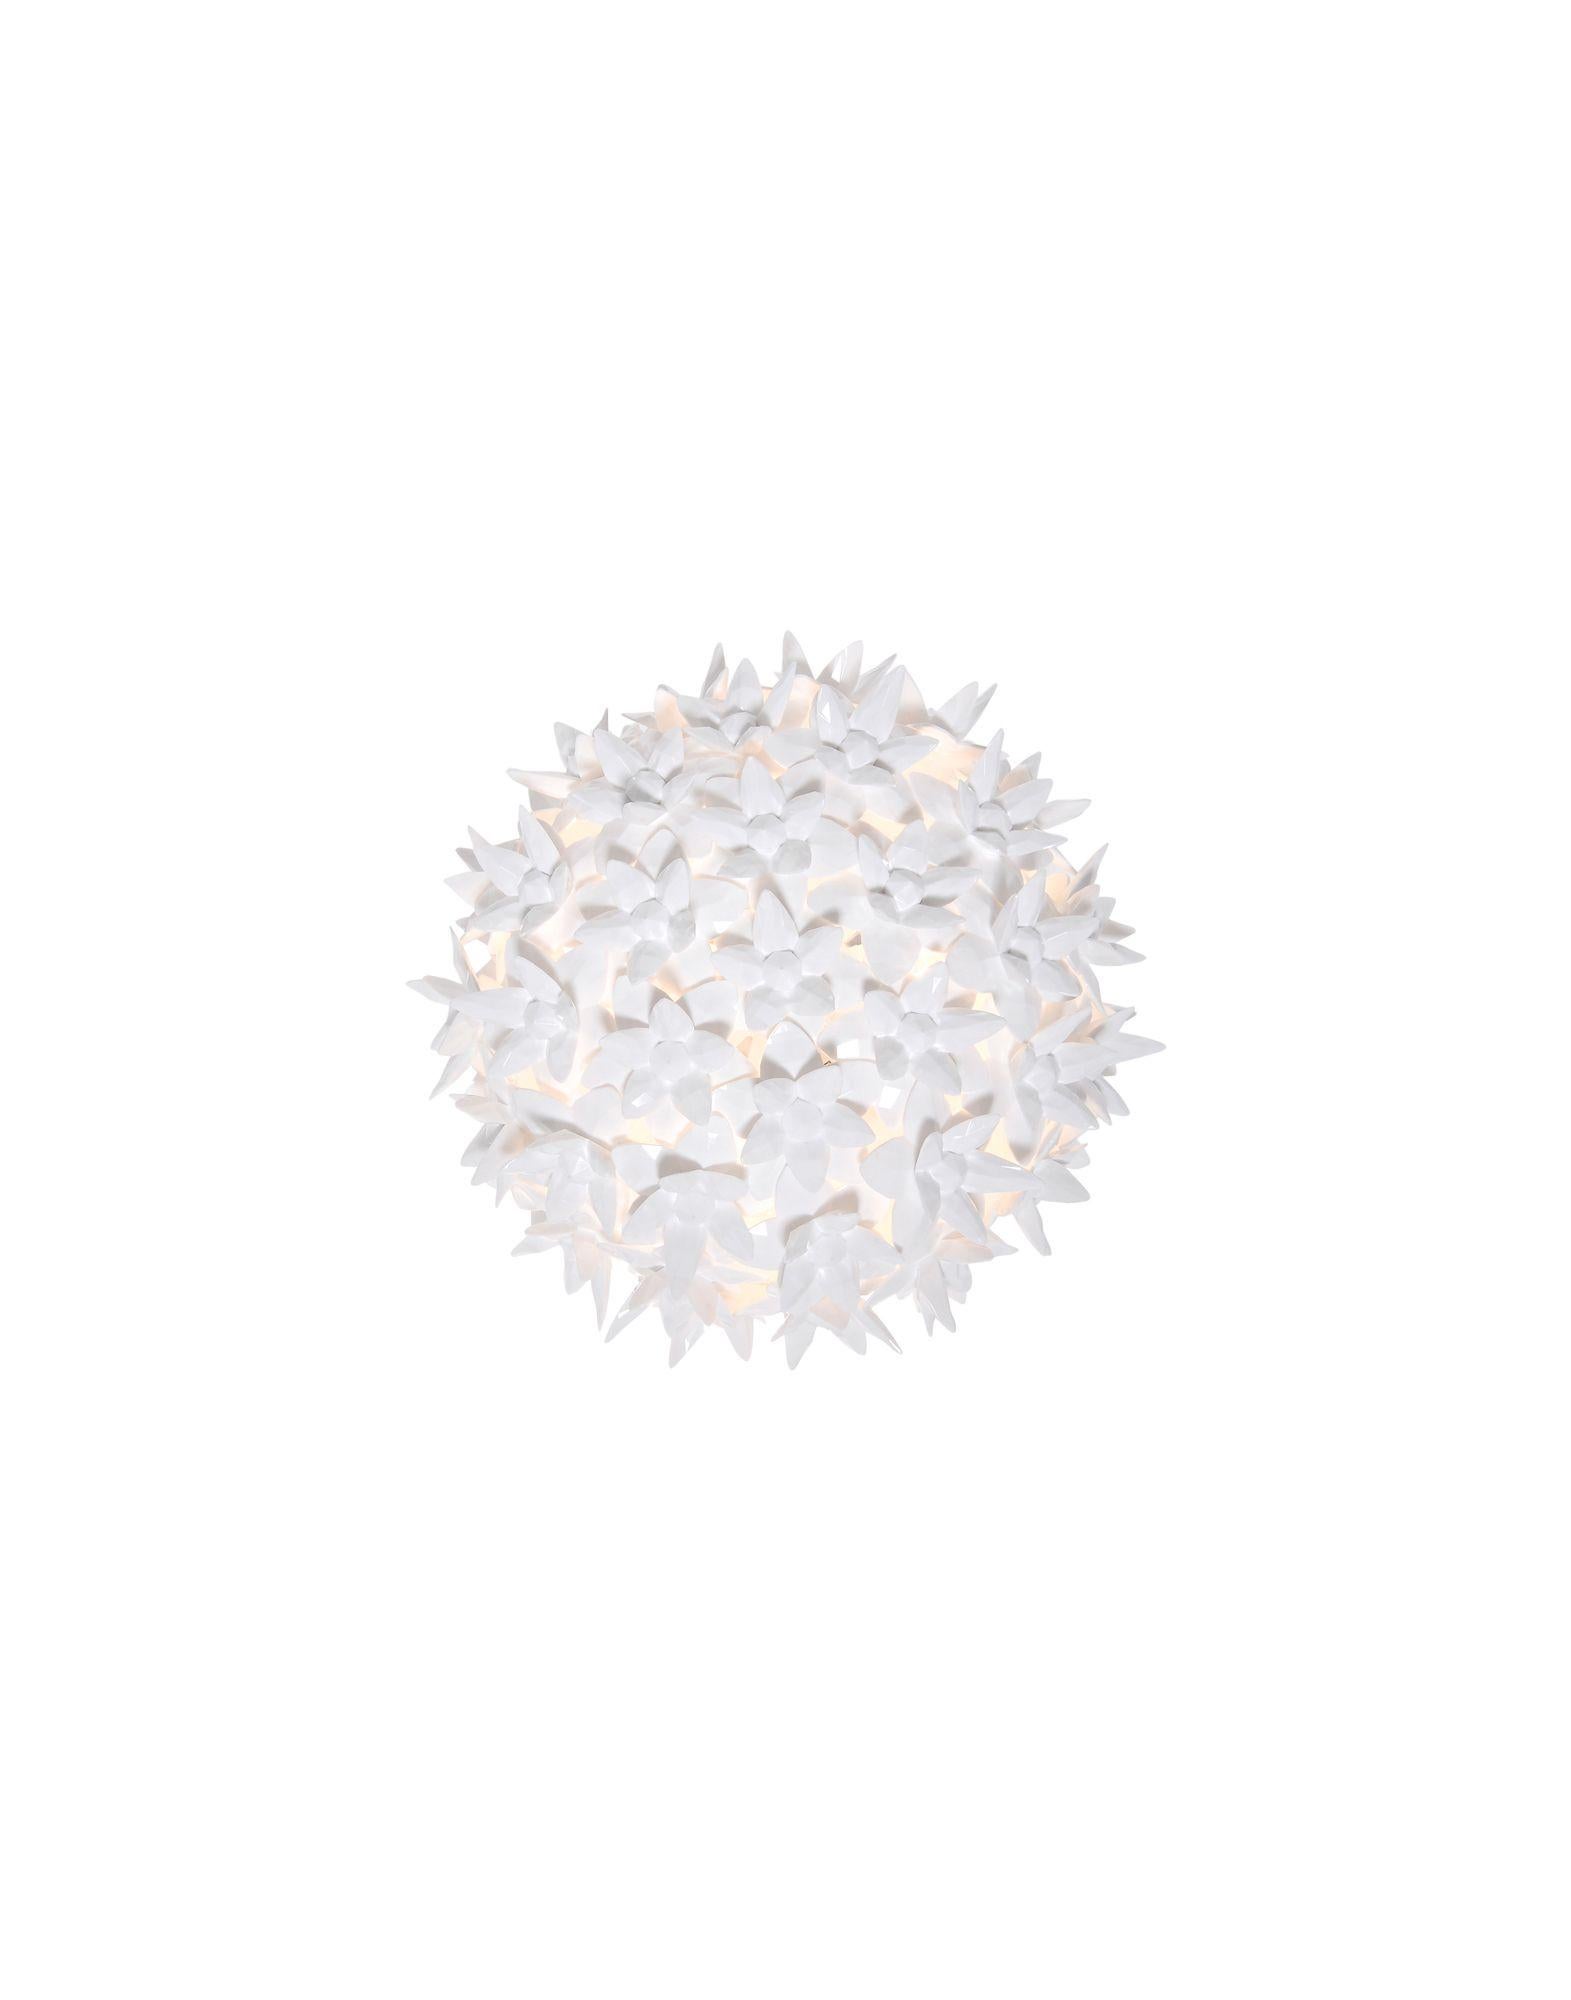 Bloom est un cadre tubulaire en polycarbonate entièrement recouvert d'une structure de minuscules fleurs à double corolle en polycarbonate transparent. Le résultat est une lampe produite industriellement, mais avec toutes les formes et la complexité